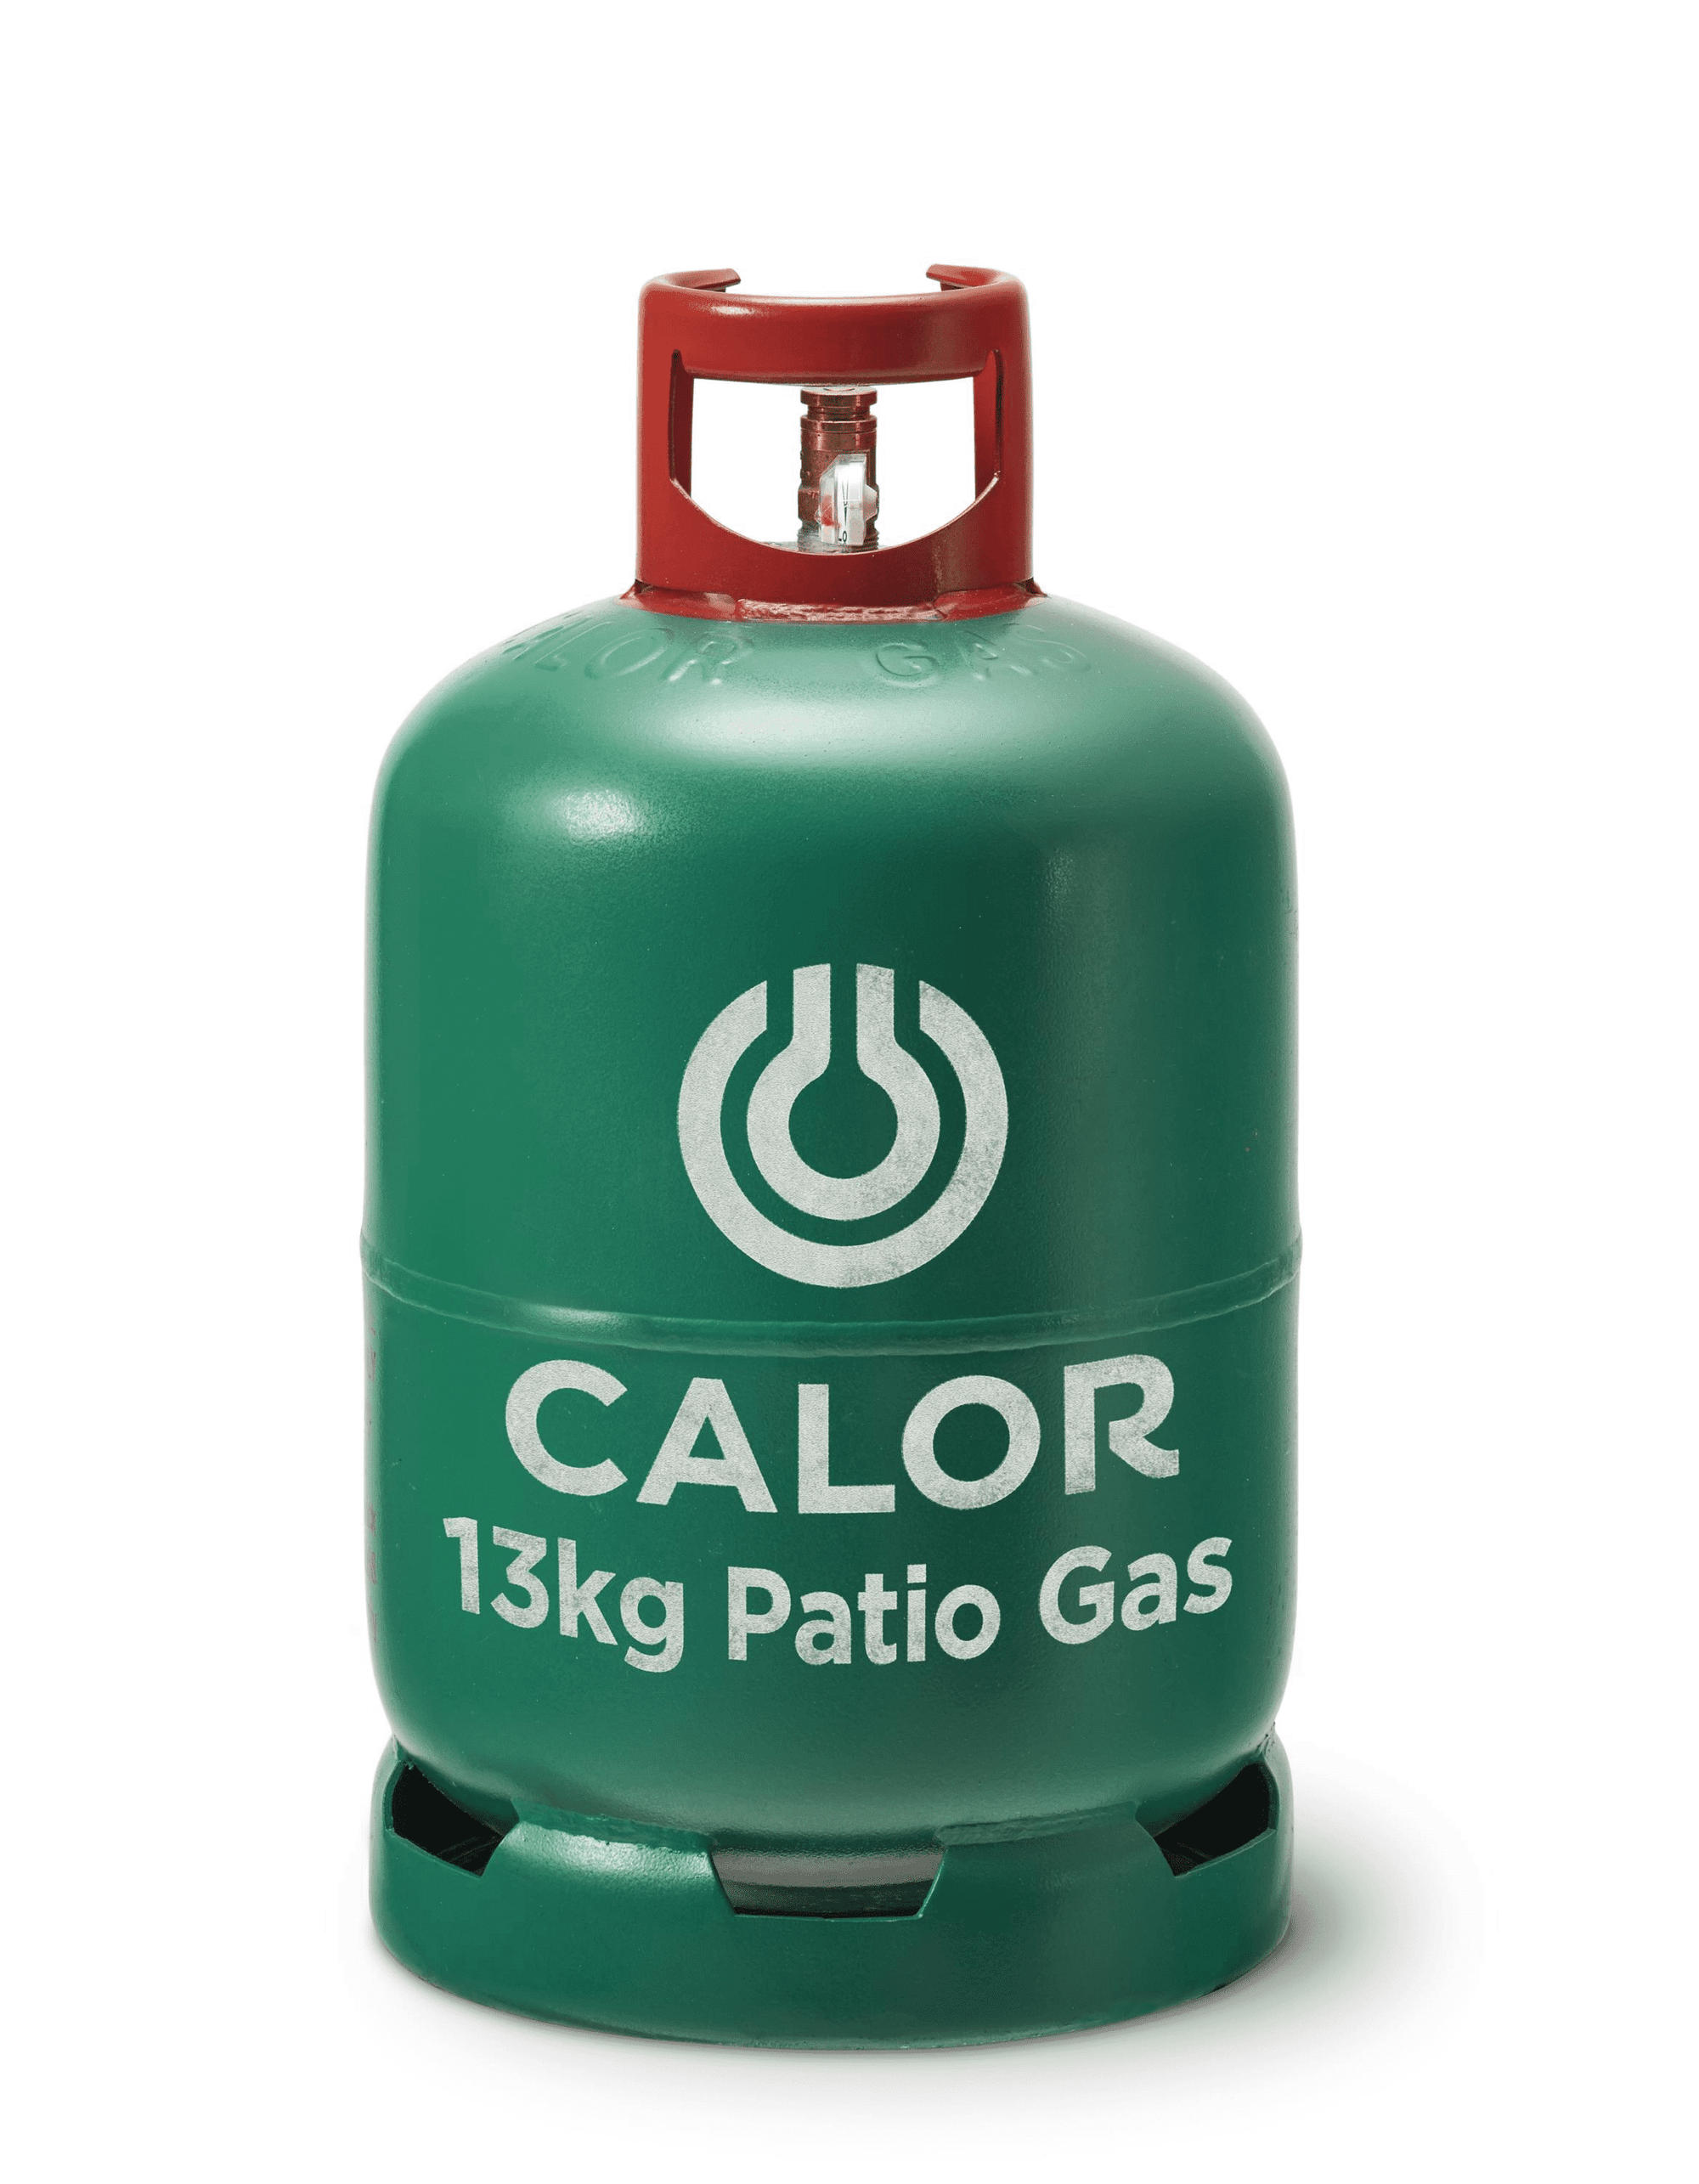 Calor Gas Bottle 13kg